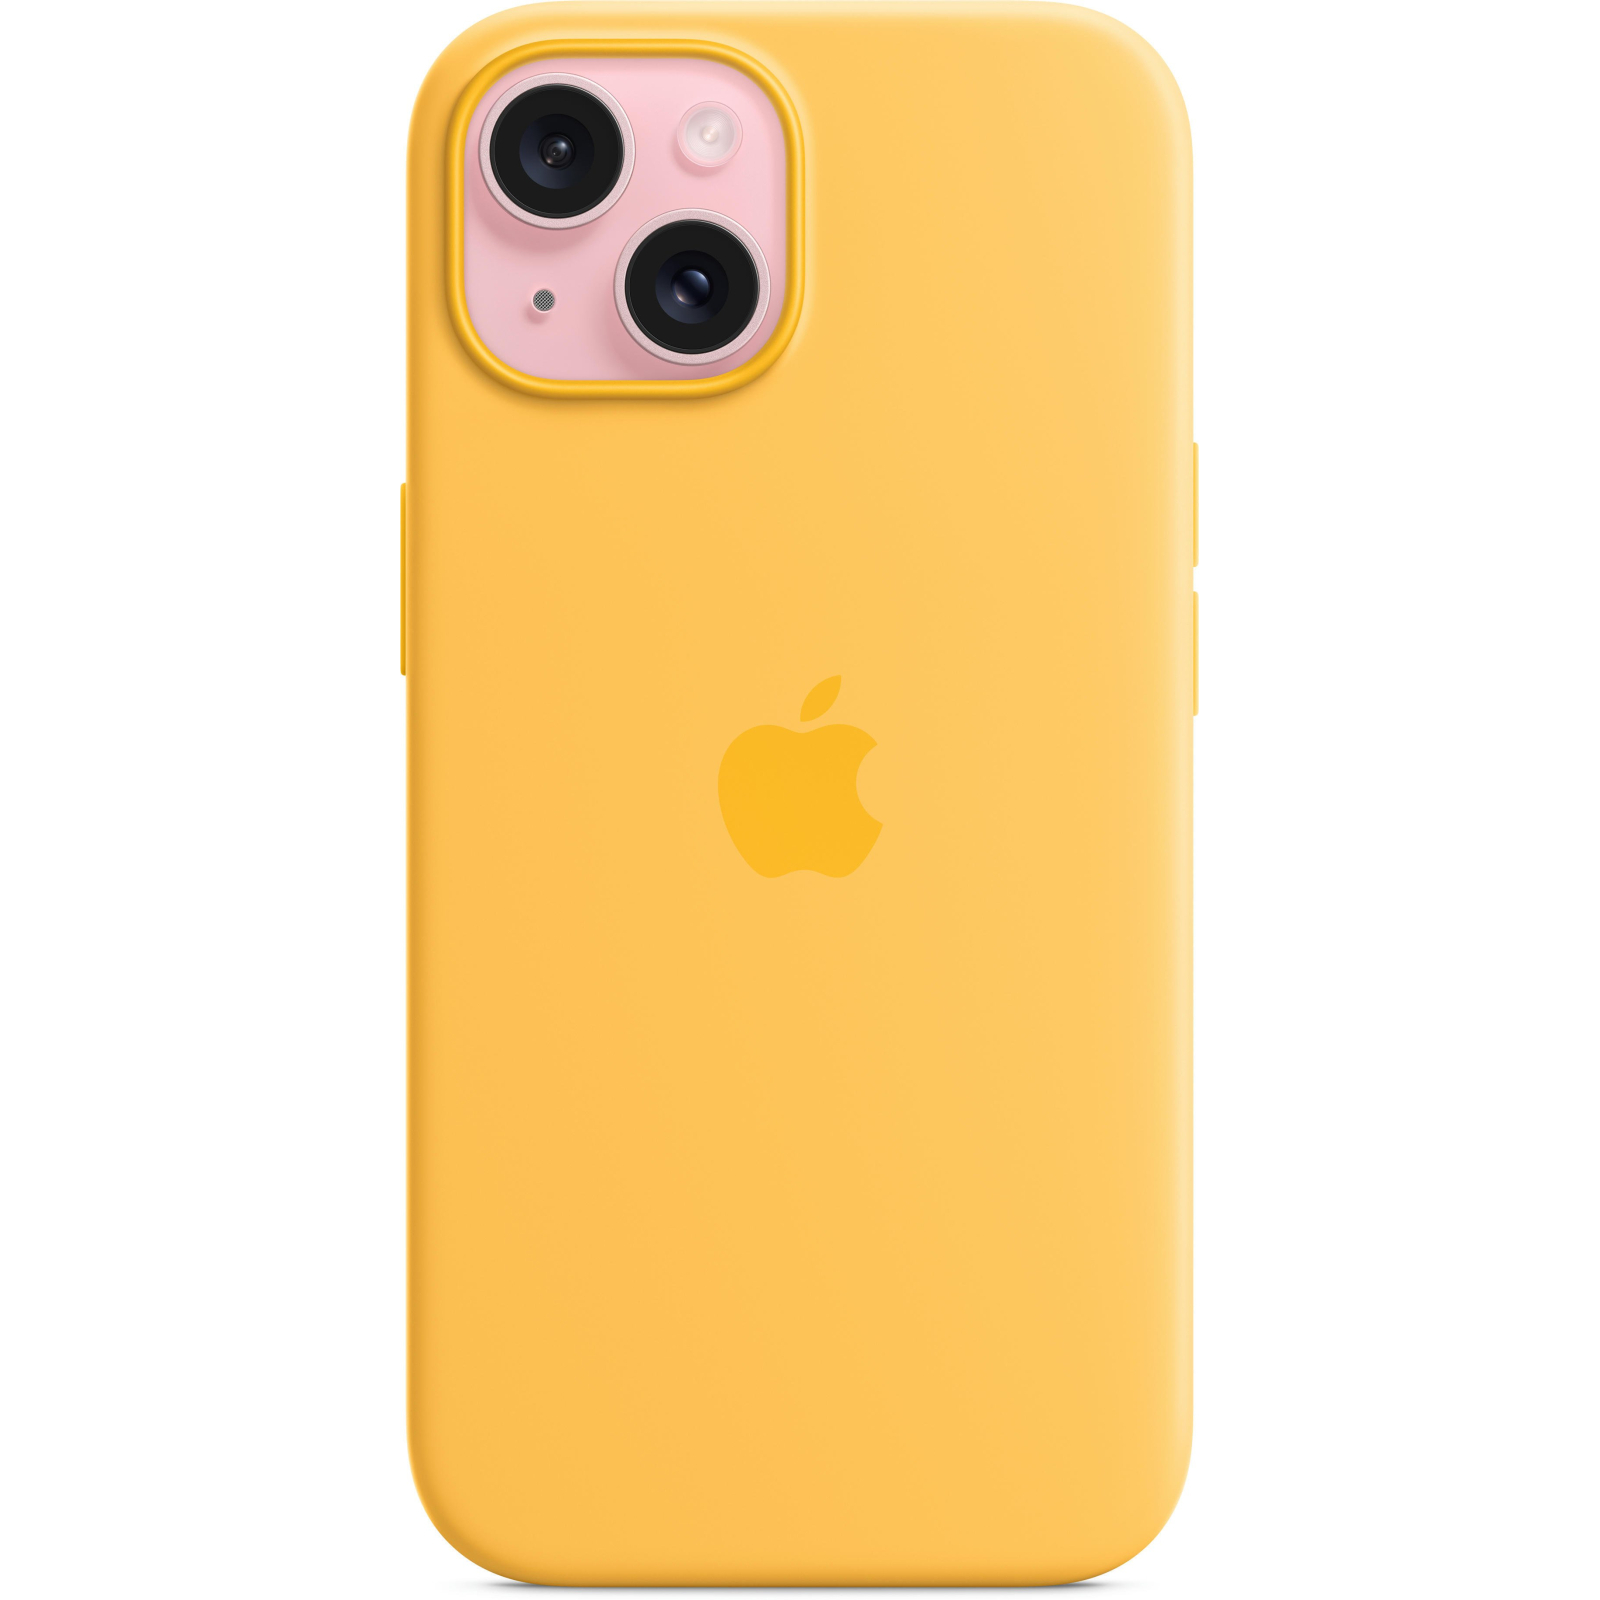 Чехол для мобильного телефона Apple iPhone 15 Silicone Case with MagSafe - Light Blue,Model A3123 (MWND3ZM/A) изображение 6